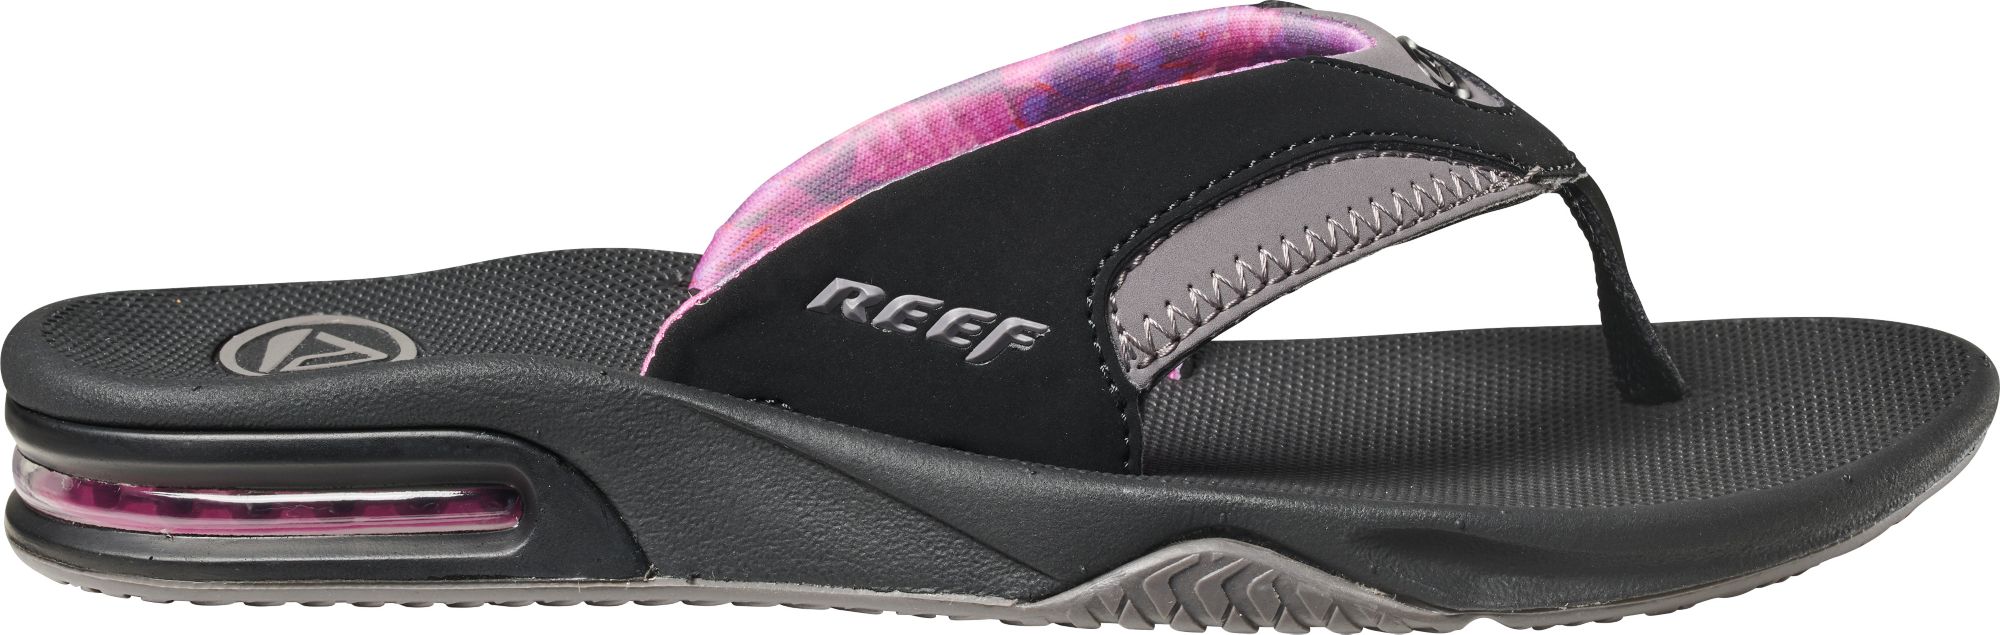 dicks reef sandals